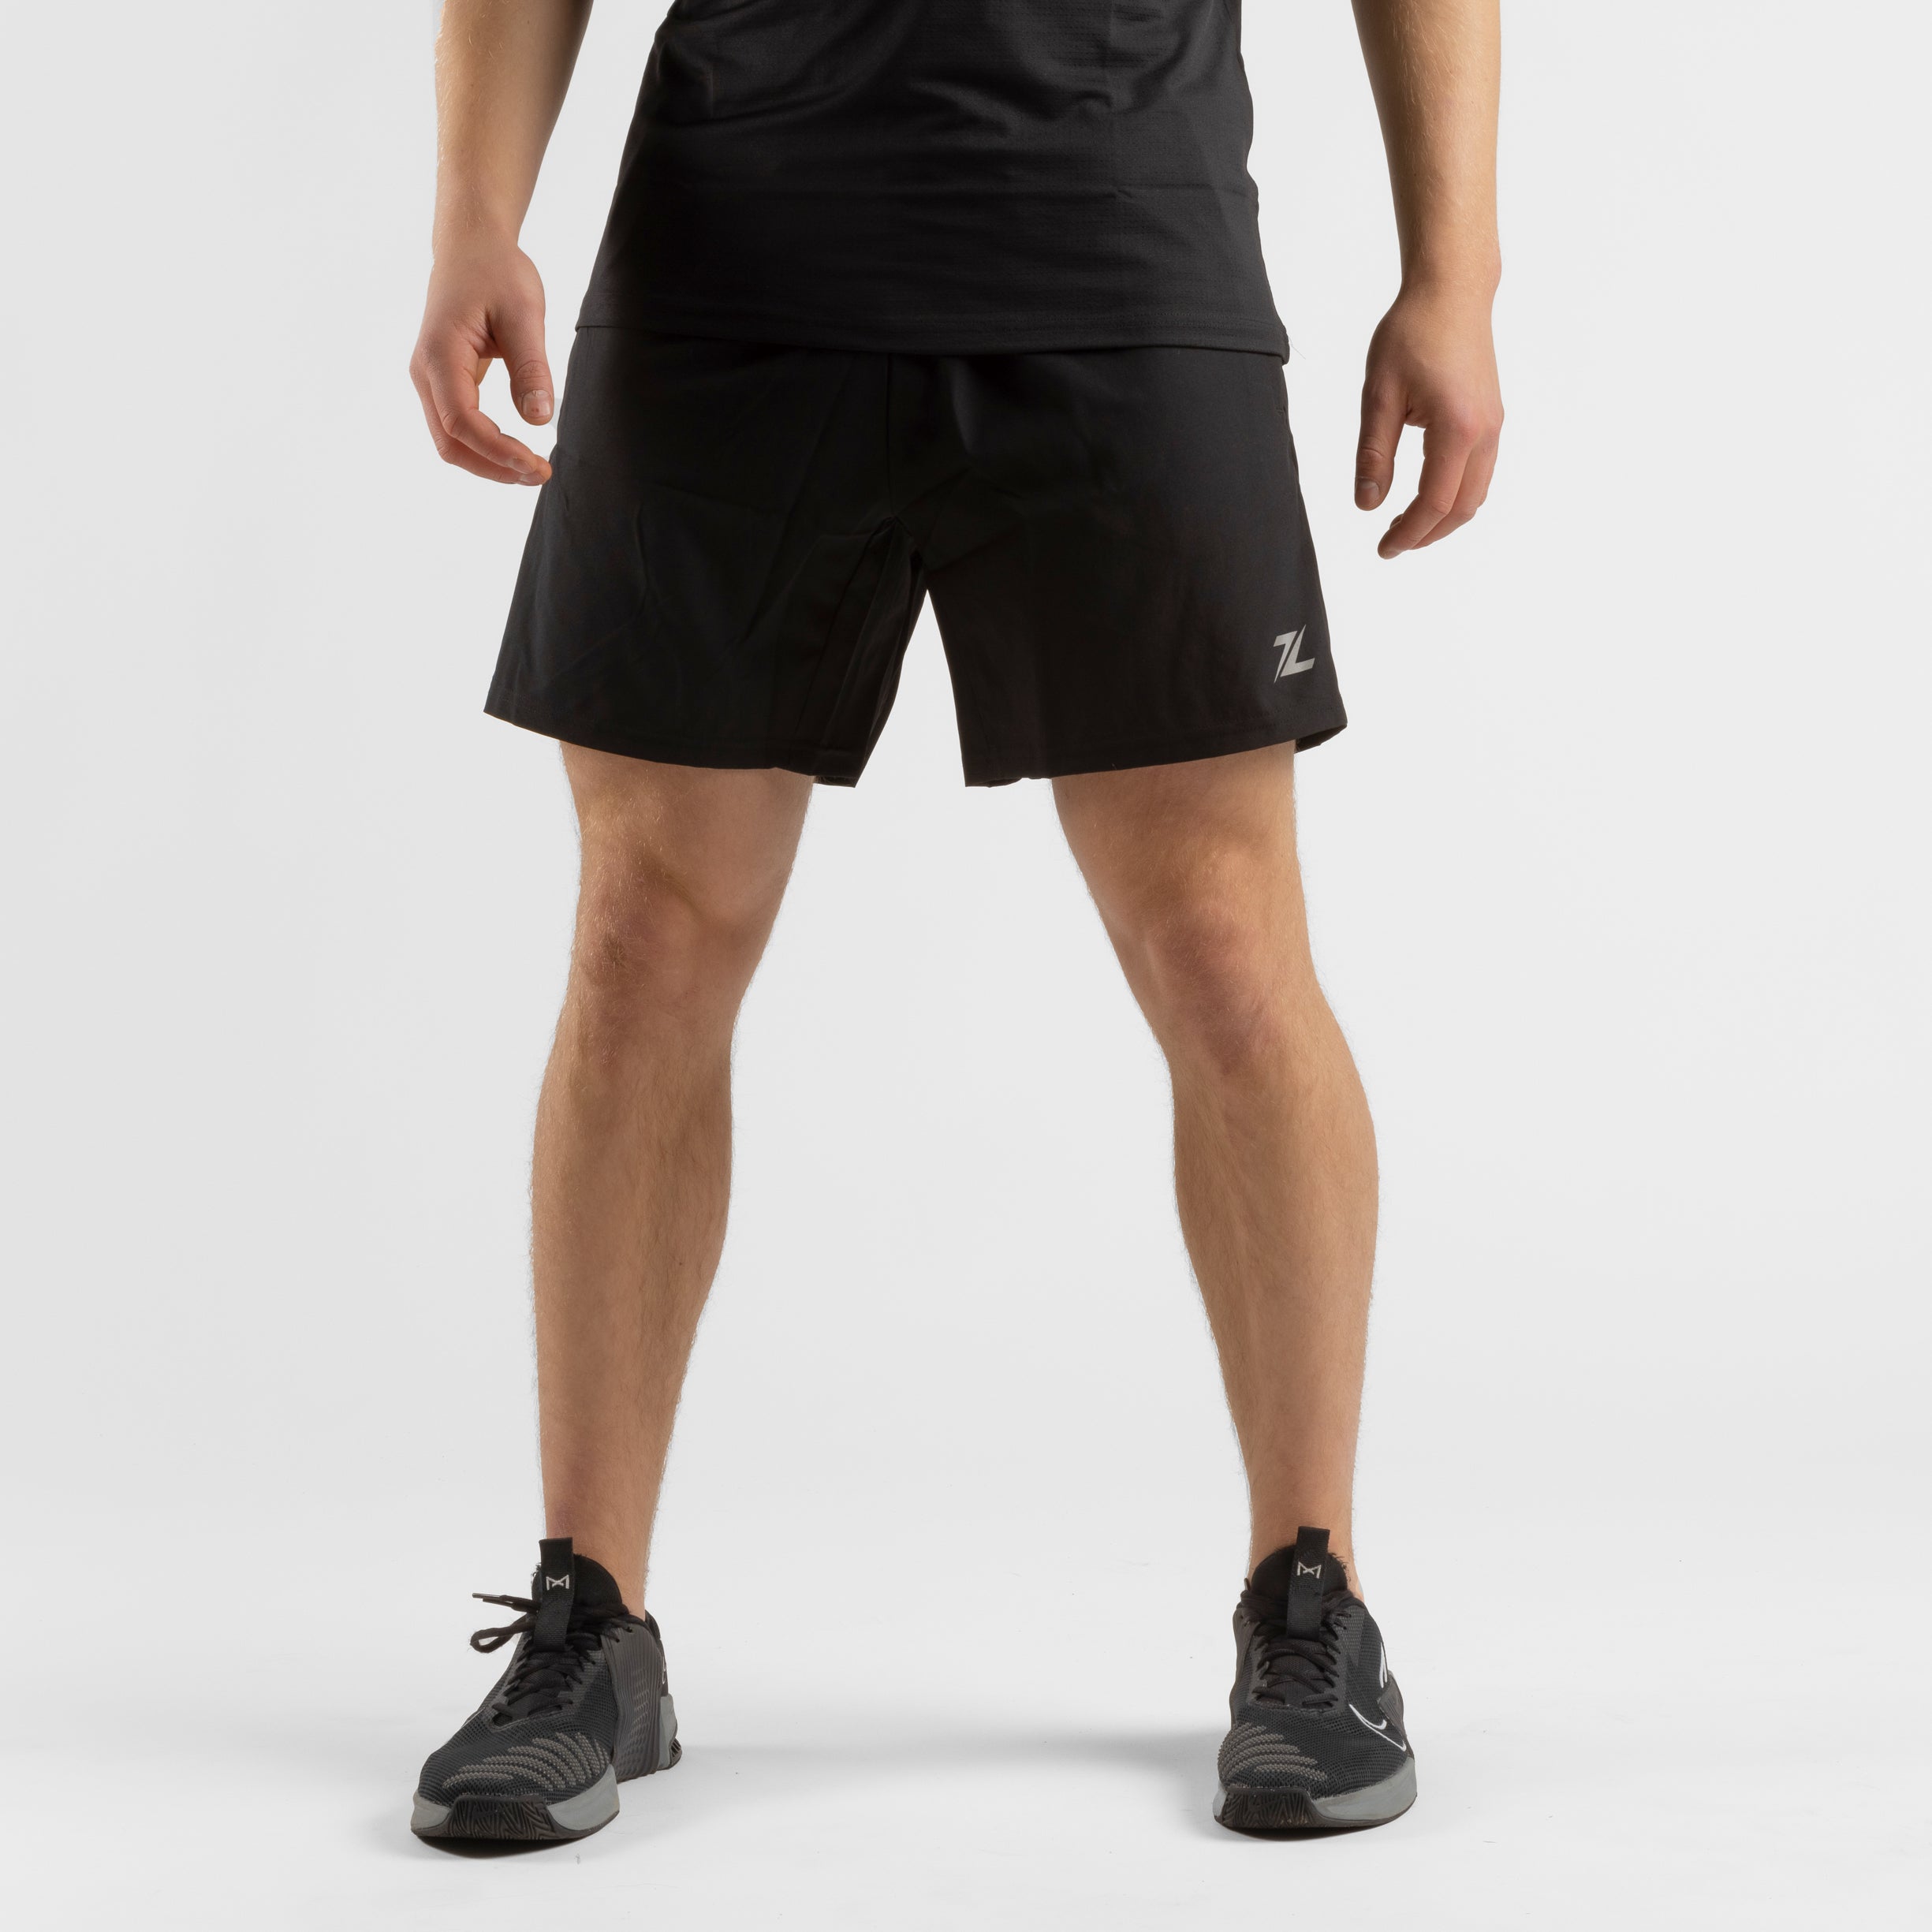 ZEUZ Sport Shorts 